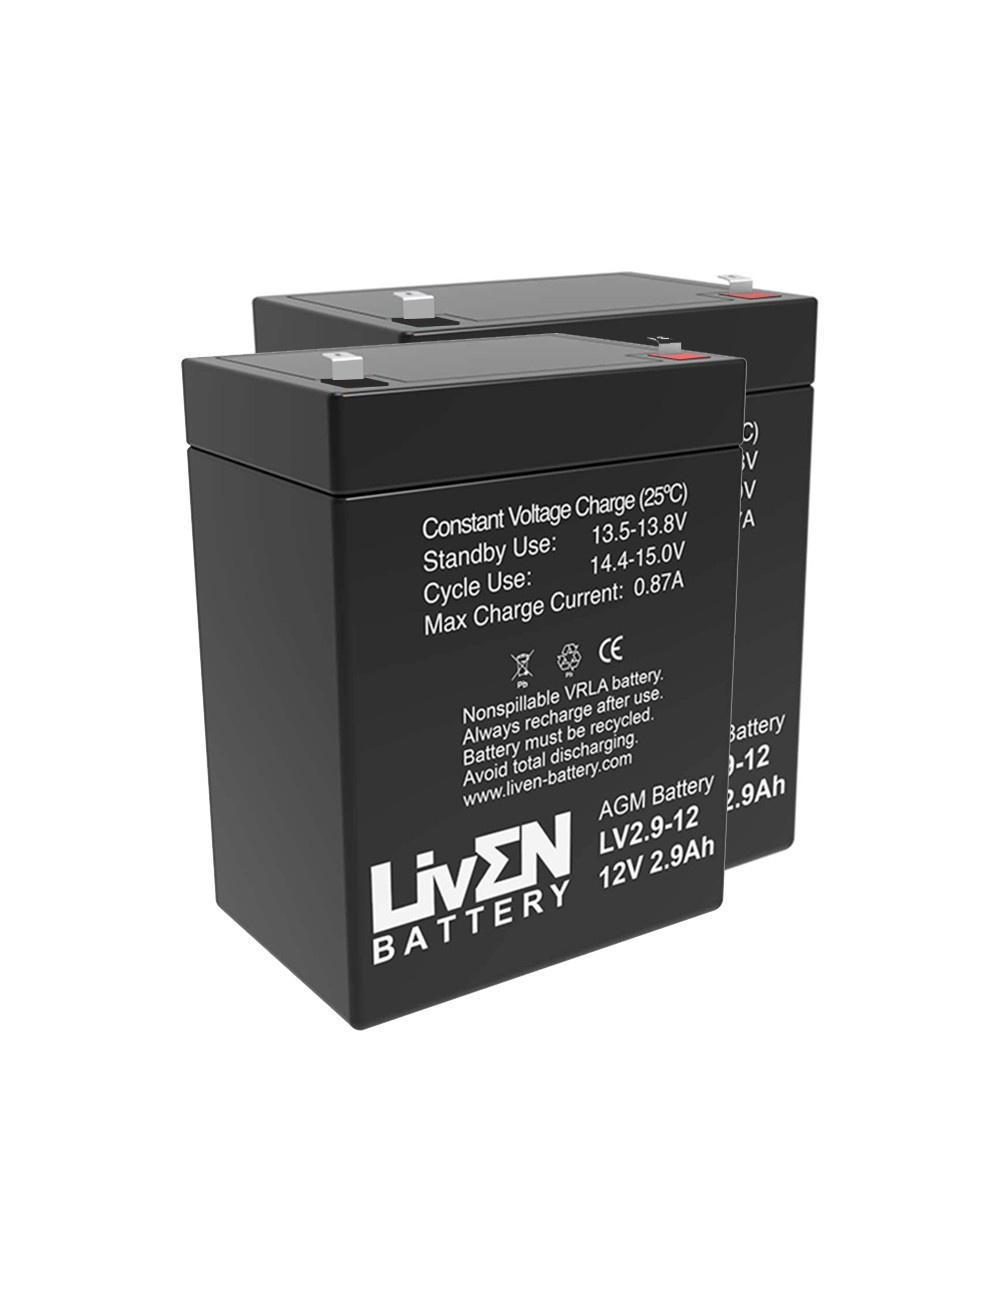 Pacote de 2 baterias (24V) para elevadores de transferência e cestas Winncare Básica E-130 12V 2,9Ah Liven LV2.9-12 - 1